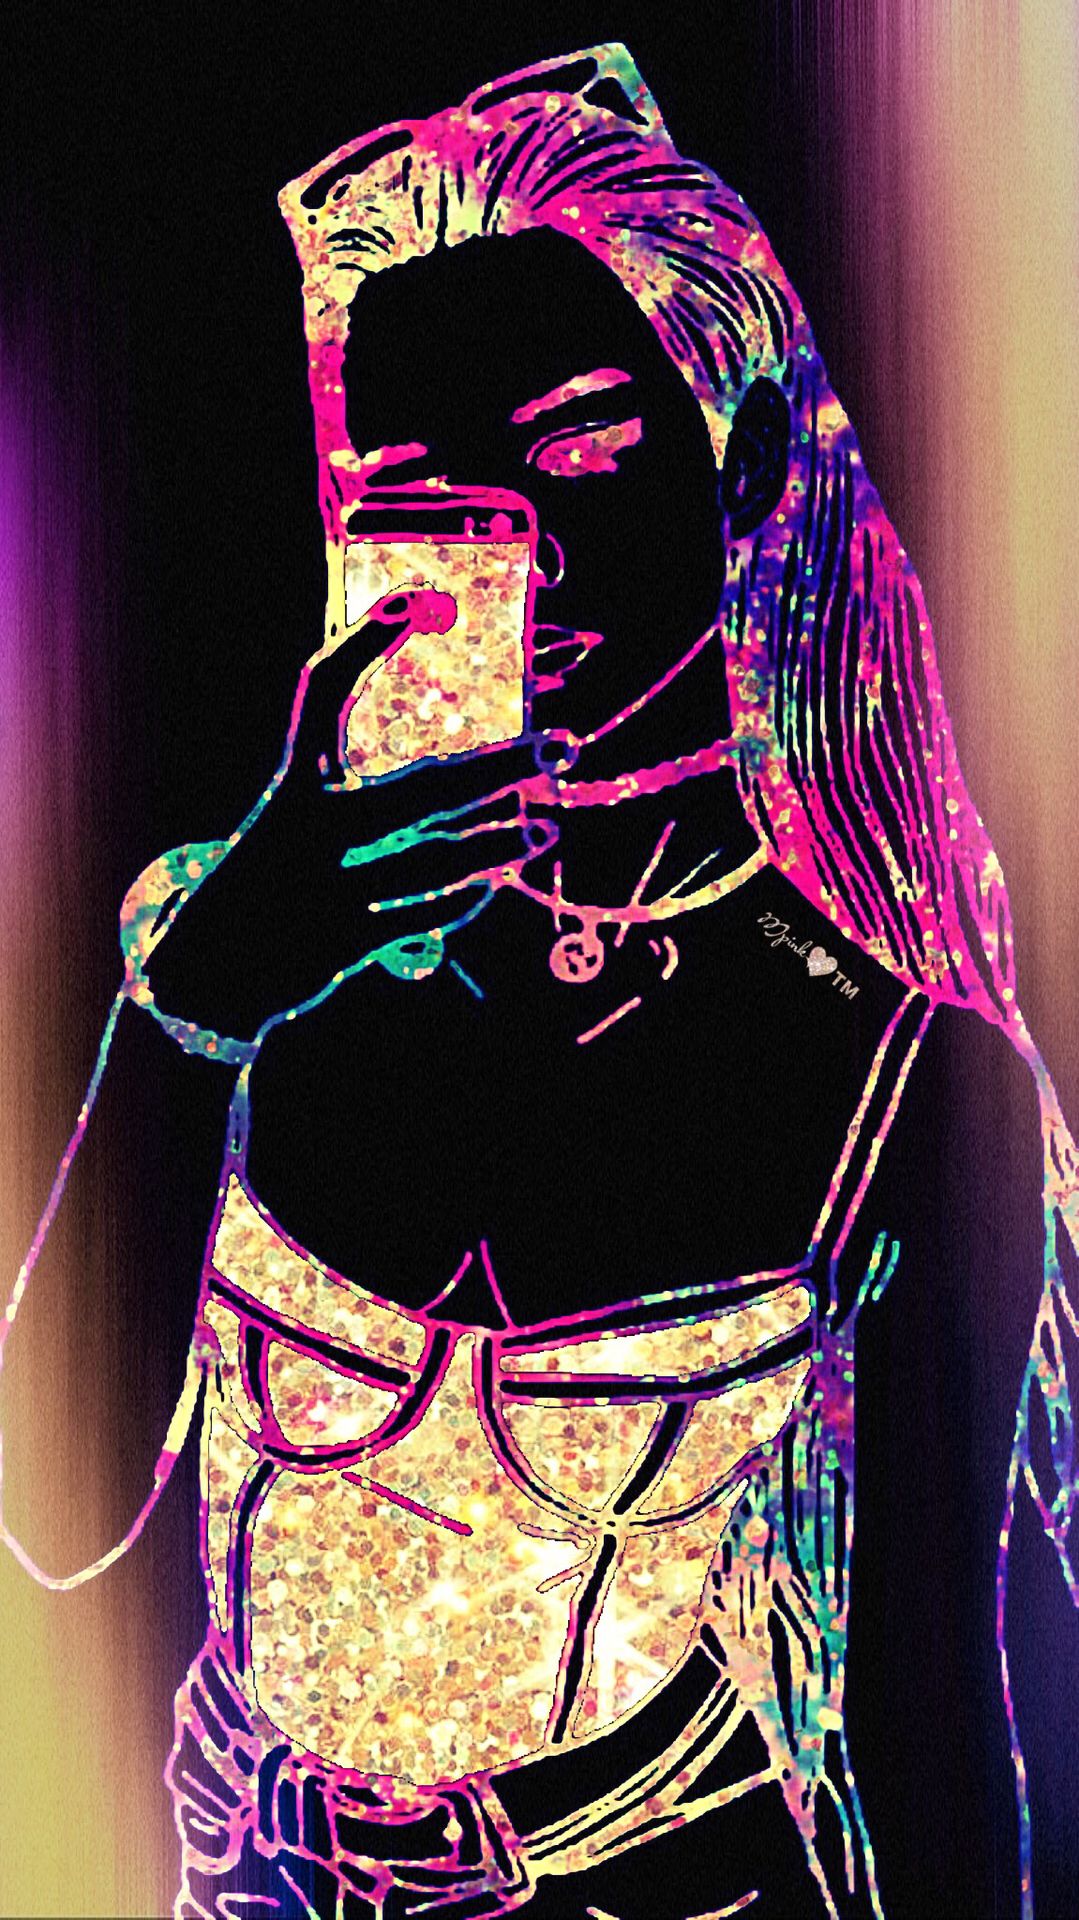 Bling Girl Galaxy Wallpaper #androidwallpaper #iphonewallpaper #wallpaper # galaxy #sparkle #glitter #l. Cute girl wallpaper, Wallpaper iphone neon, Neon wallpaper